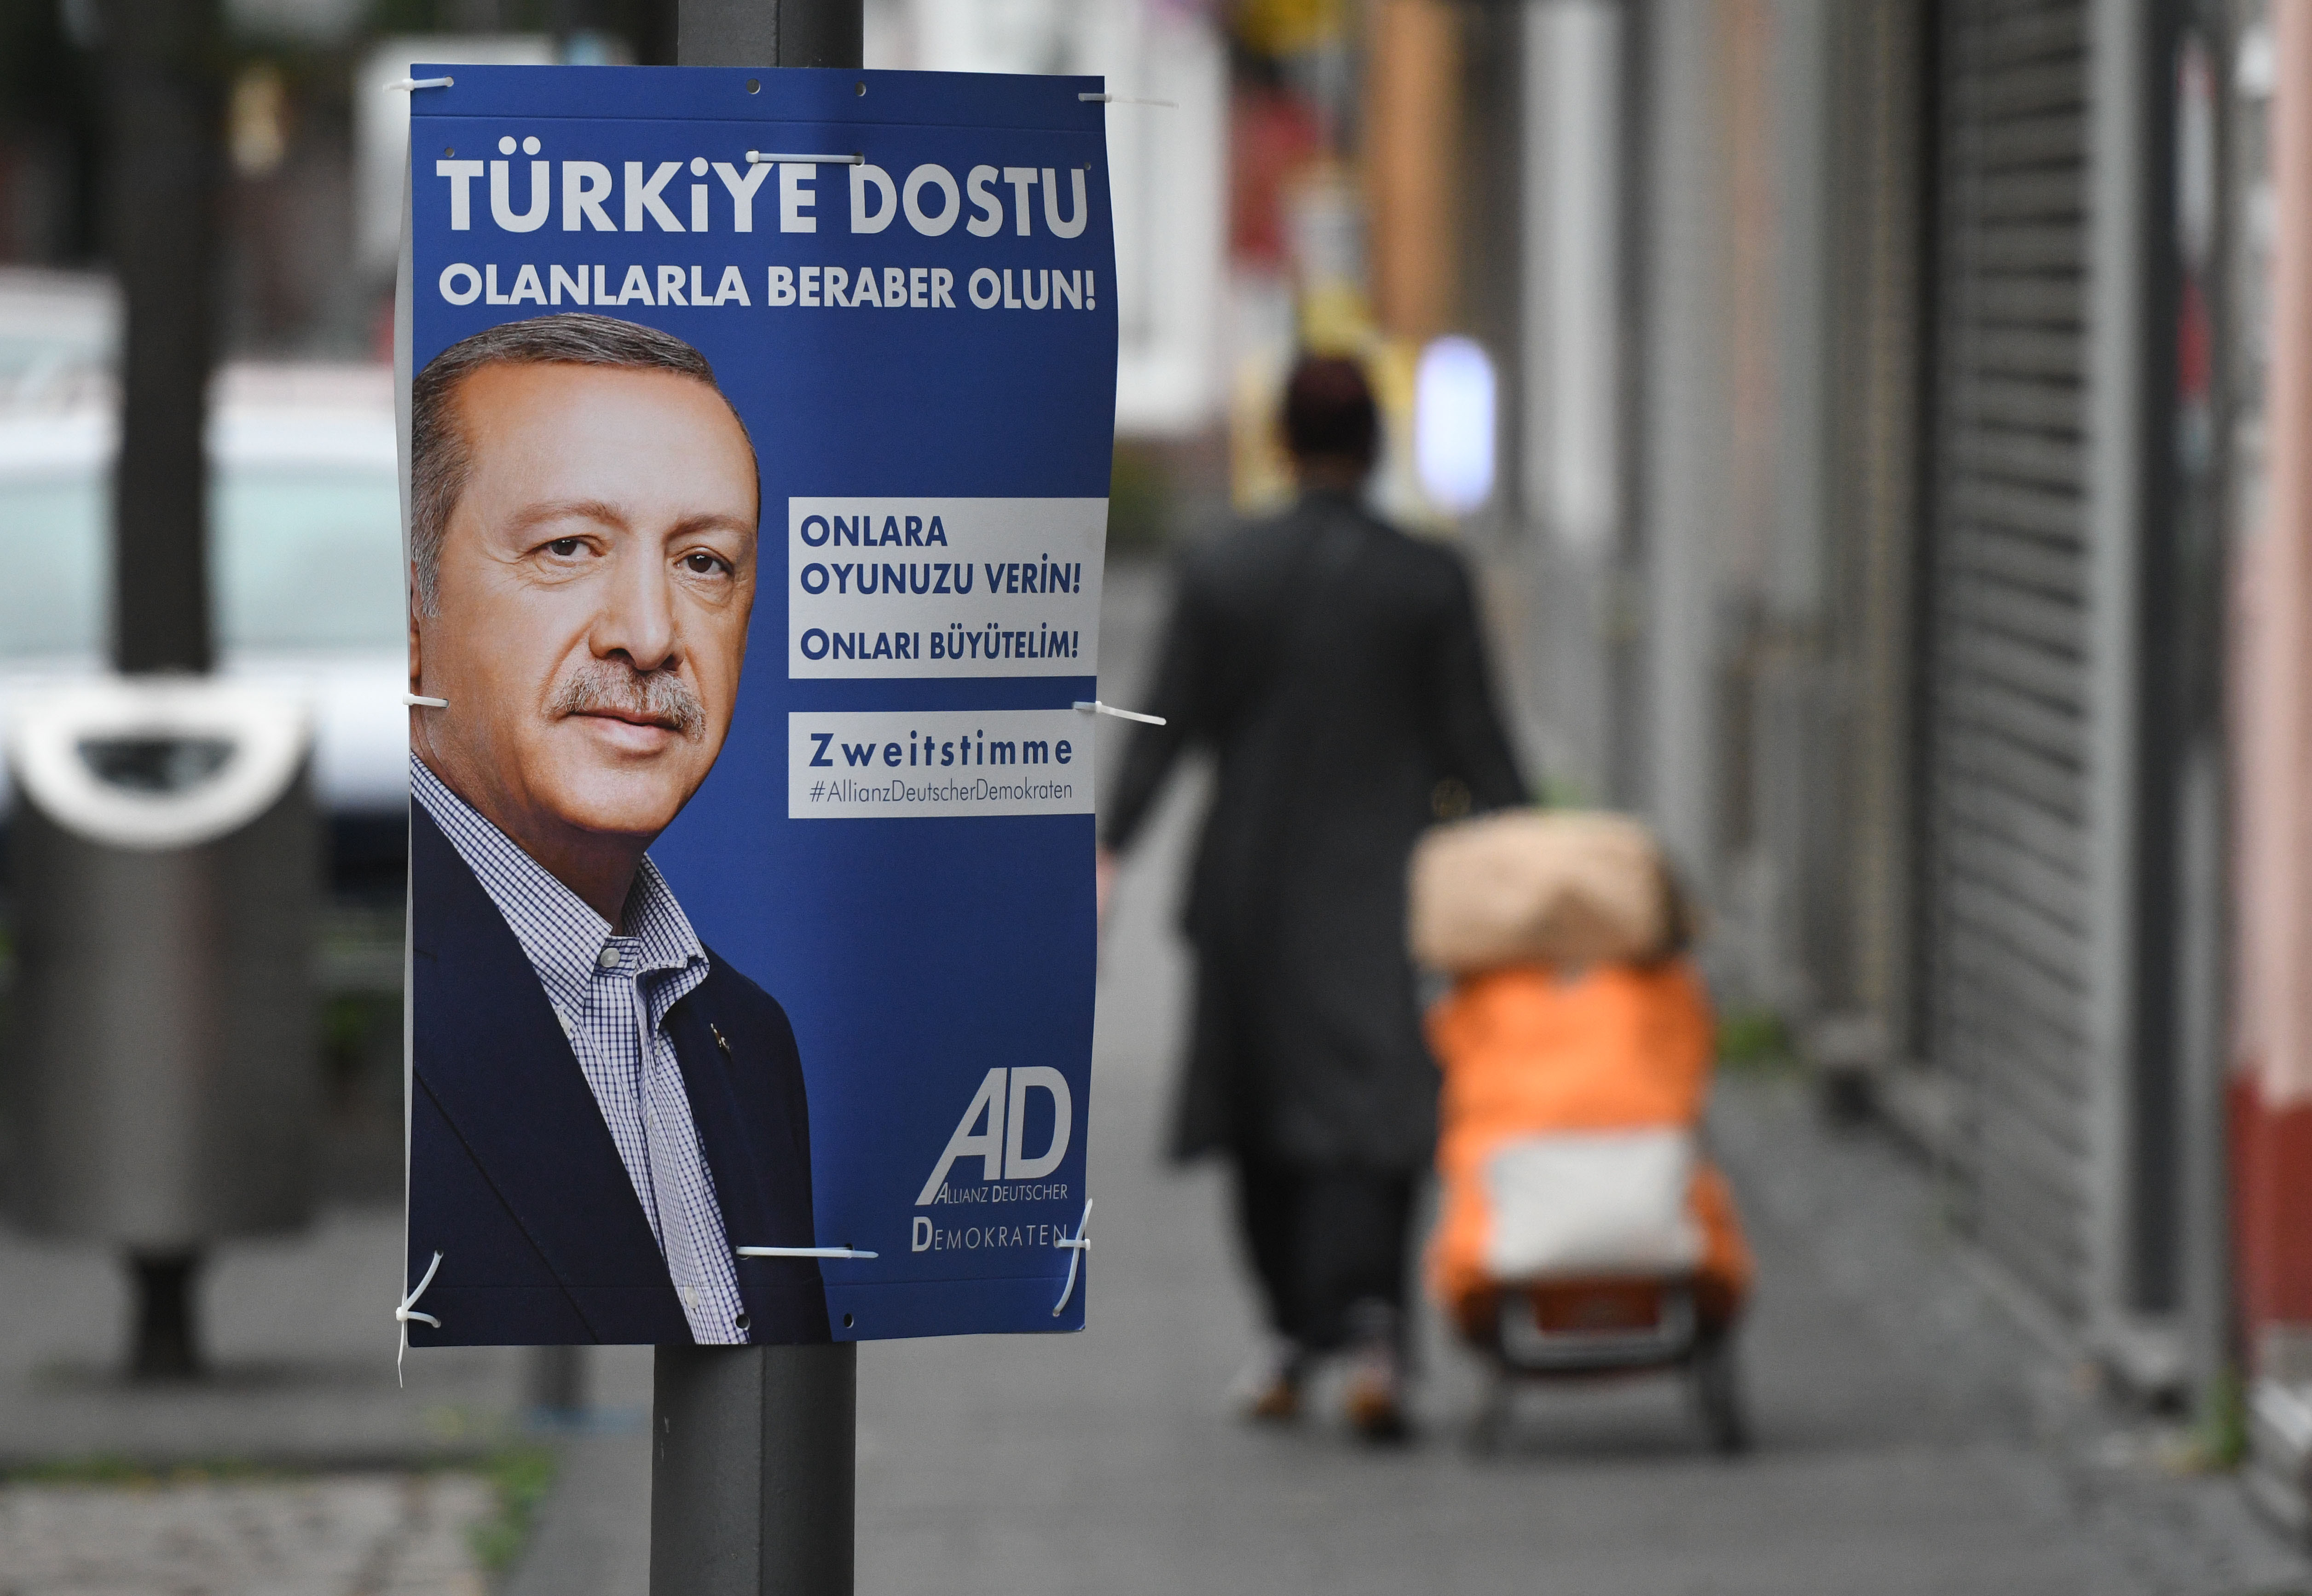 Erdogan képével és török szöveggel kampányol egy párt Németországban